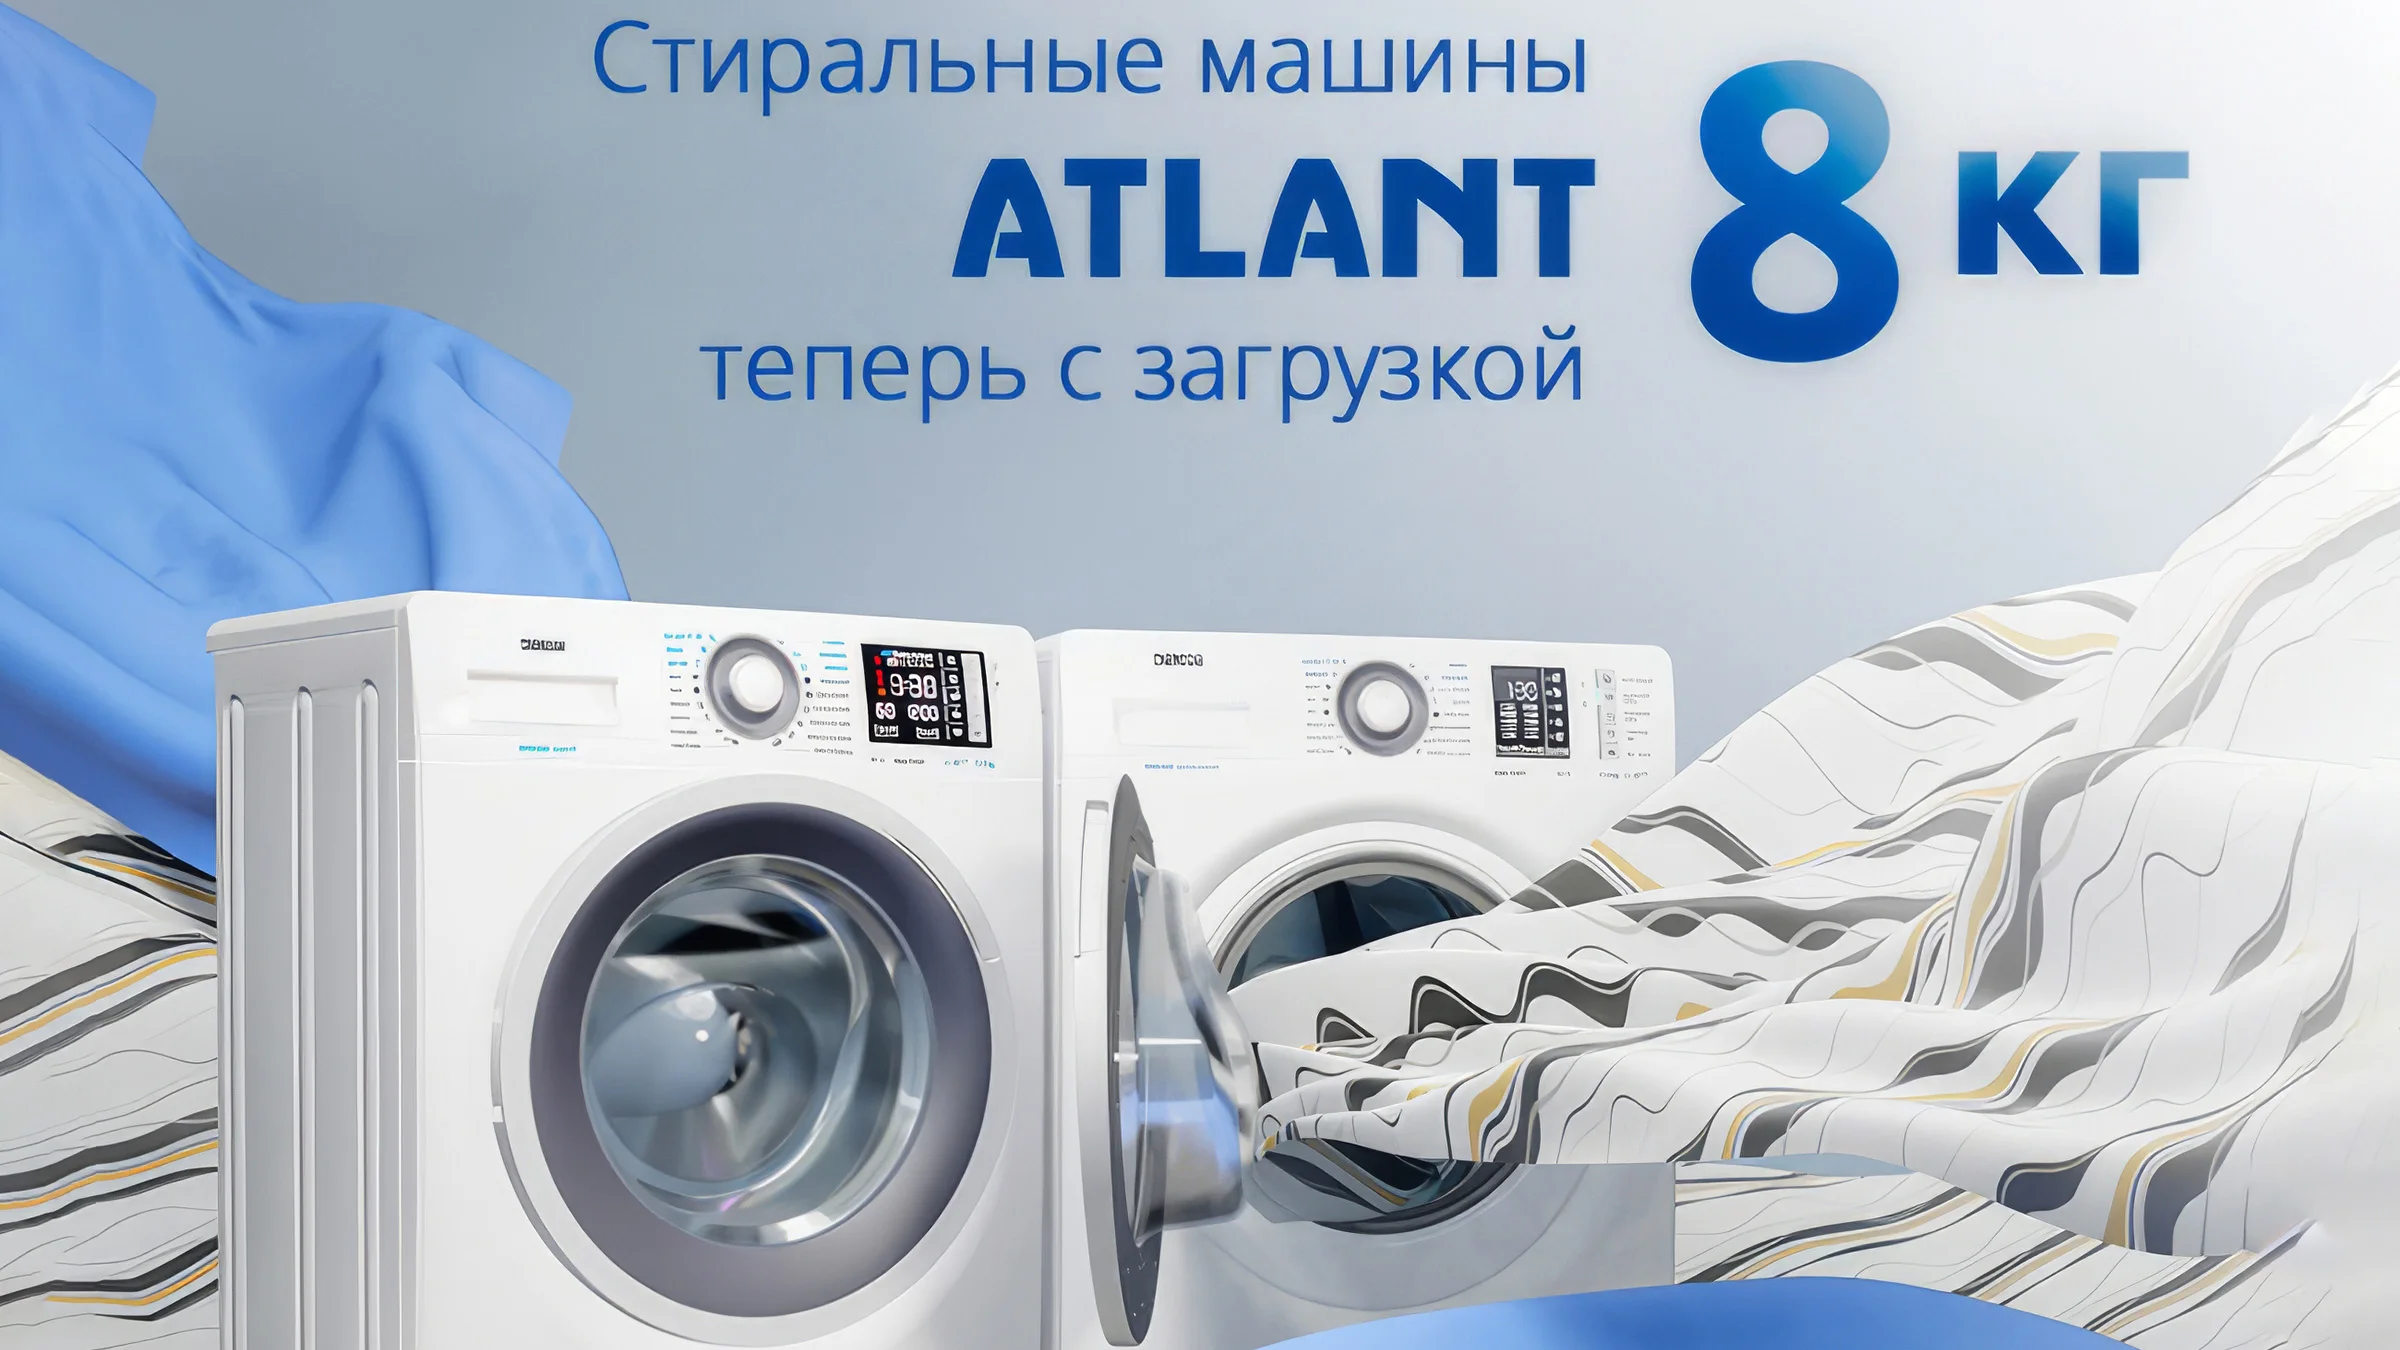 Новые стиральные машины Atlant с загрузкой 8 кг